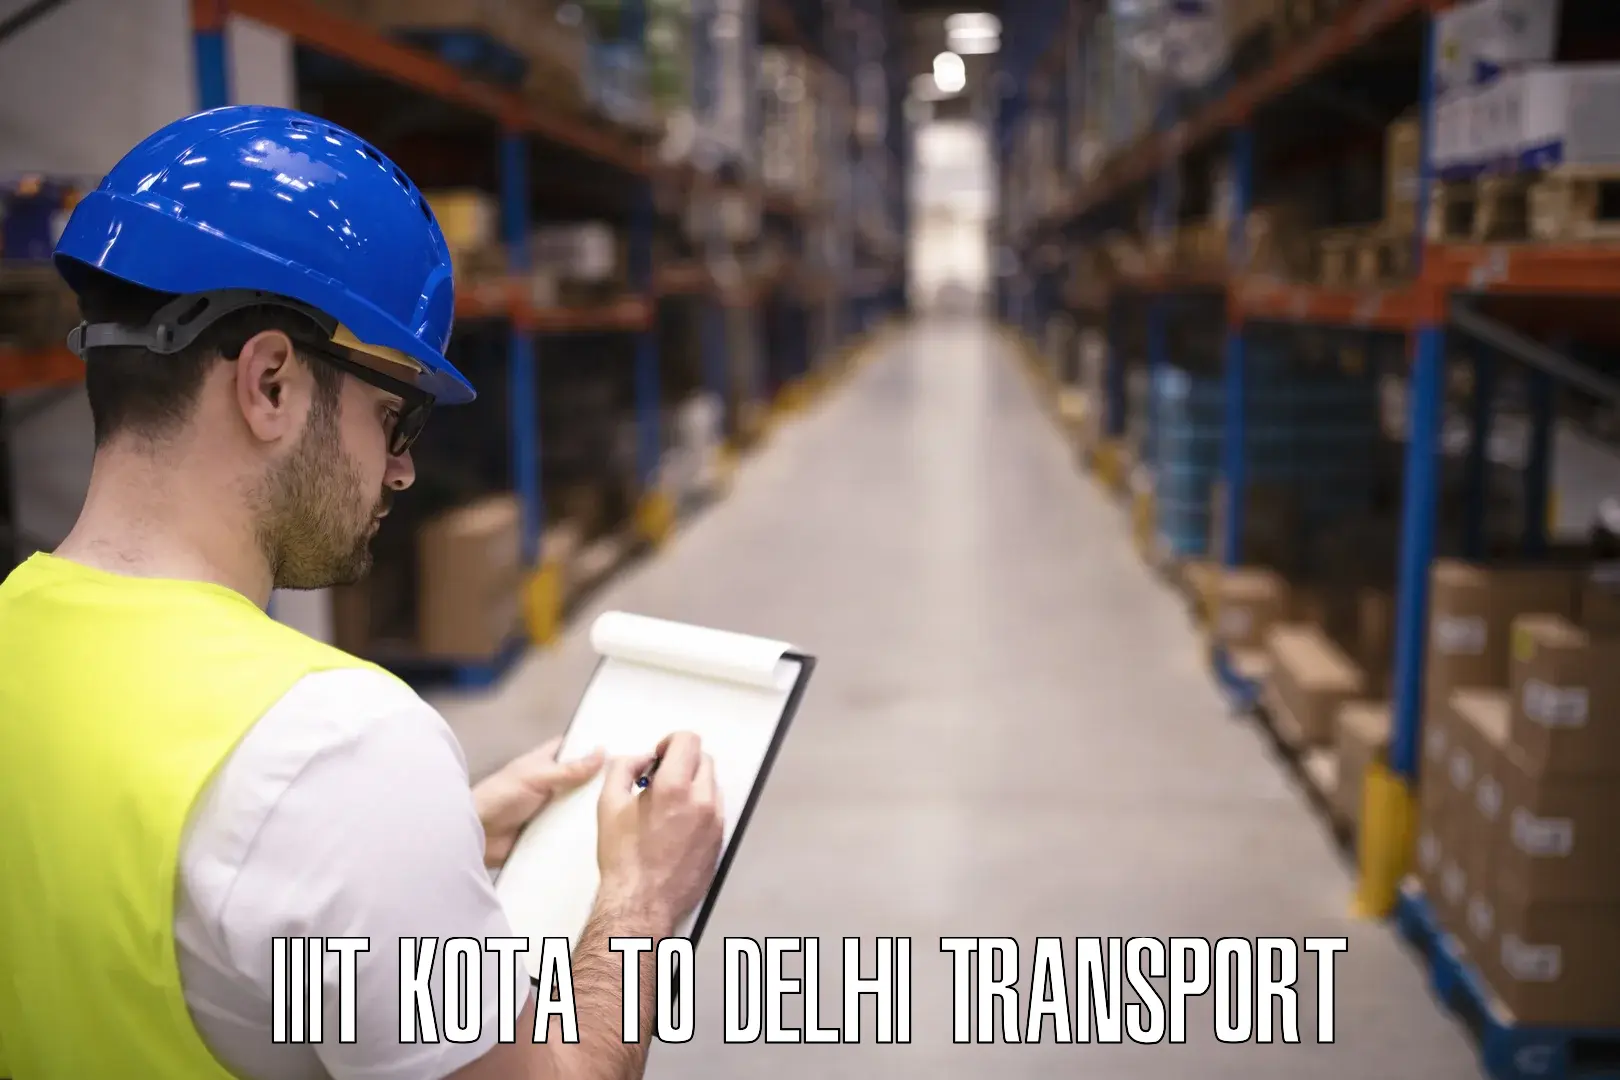 Nearest transport service in IIIT Kota to NIT Delhi